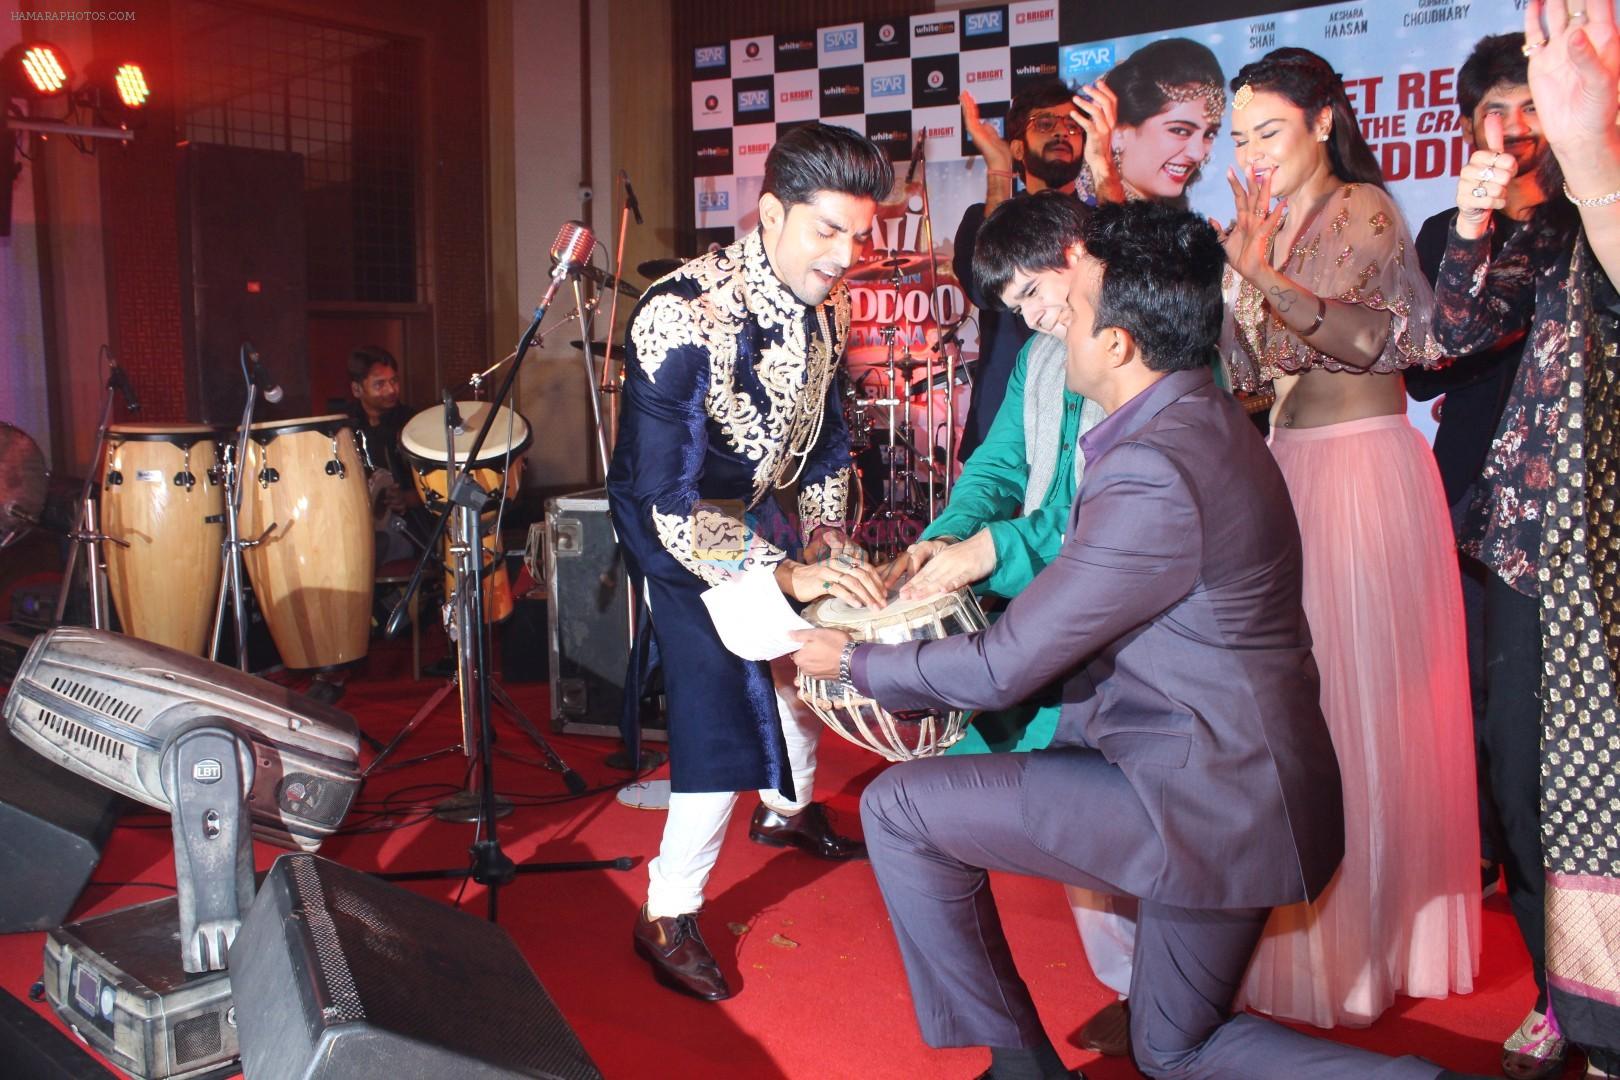 Gurmeet Choudhary at Sangeet Ceremony For Film Laali Ki Shaadi Mein Laaddoo Deewana on 21st March 2017